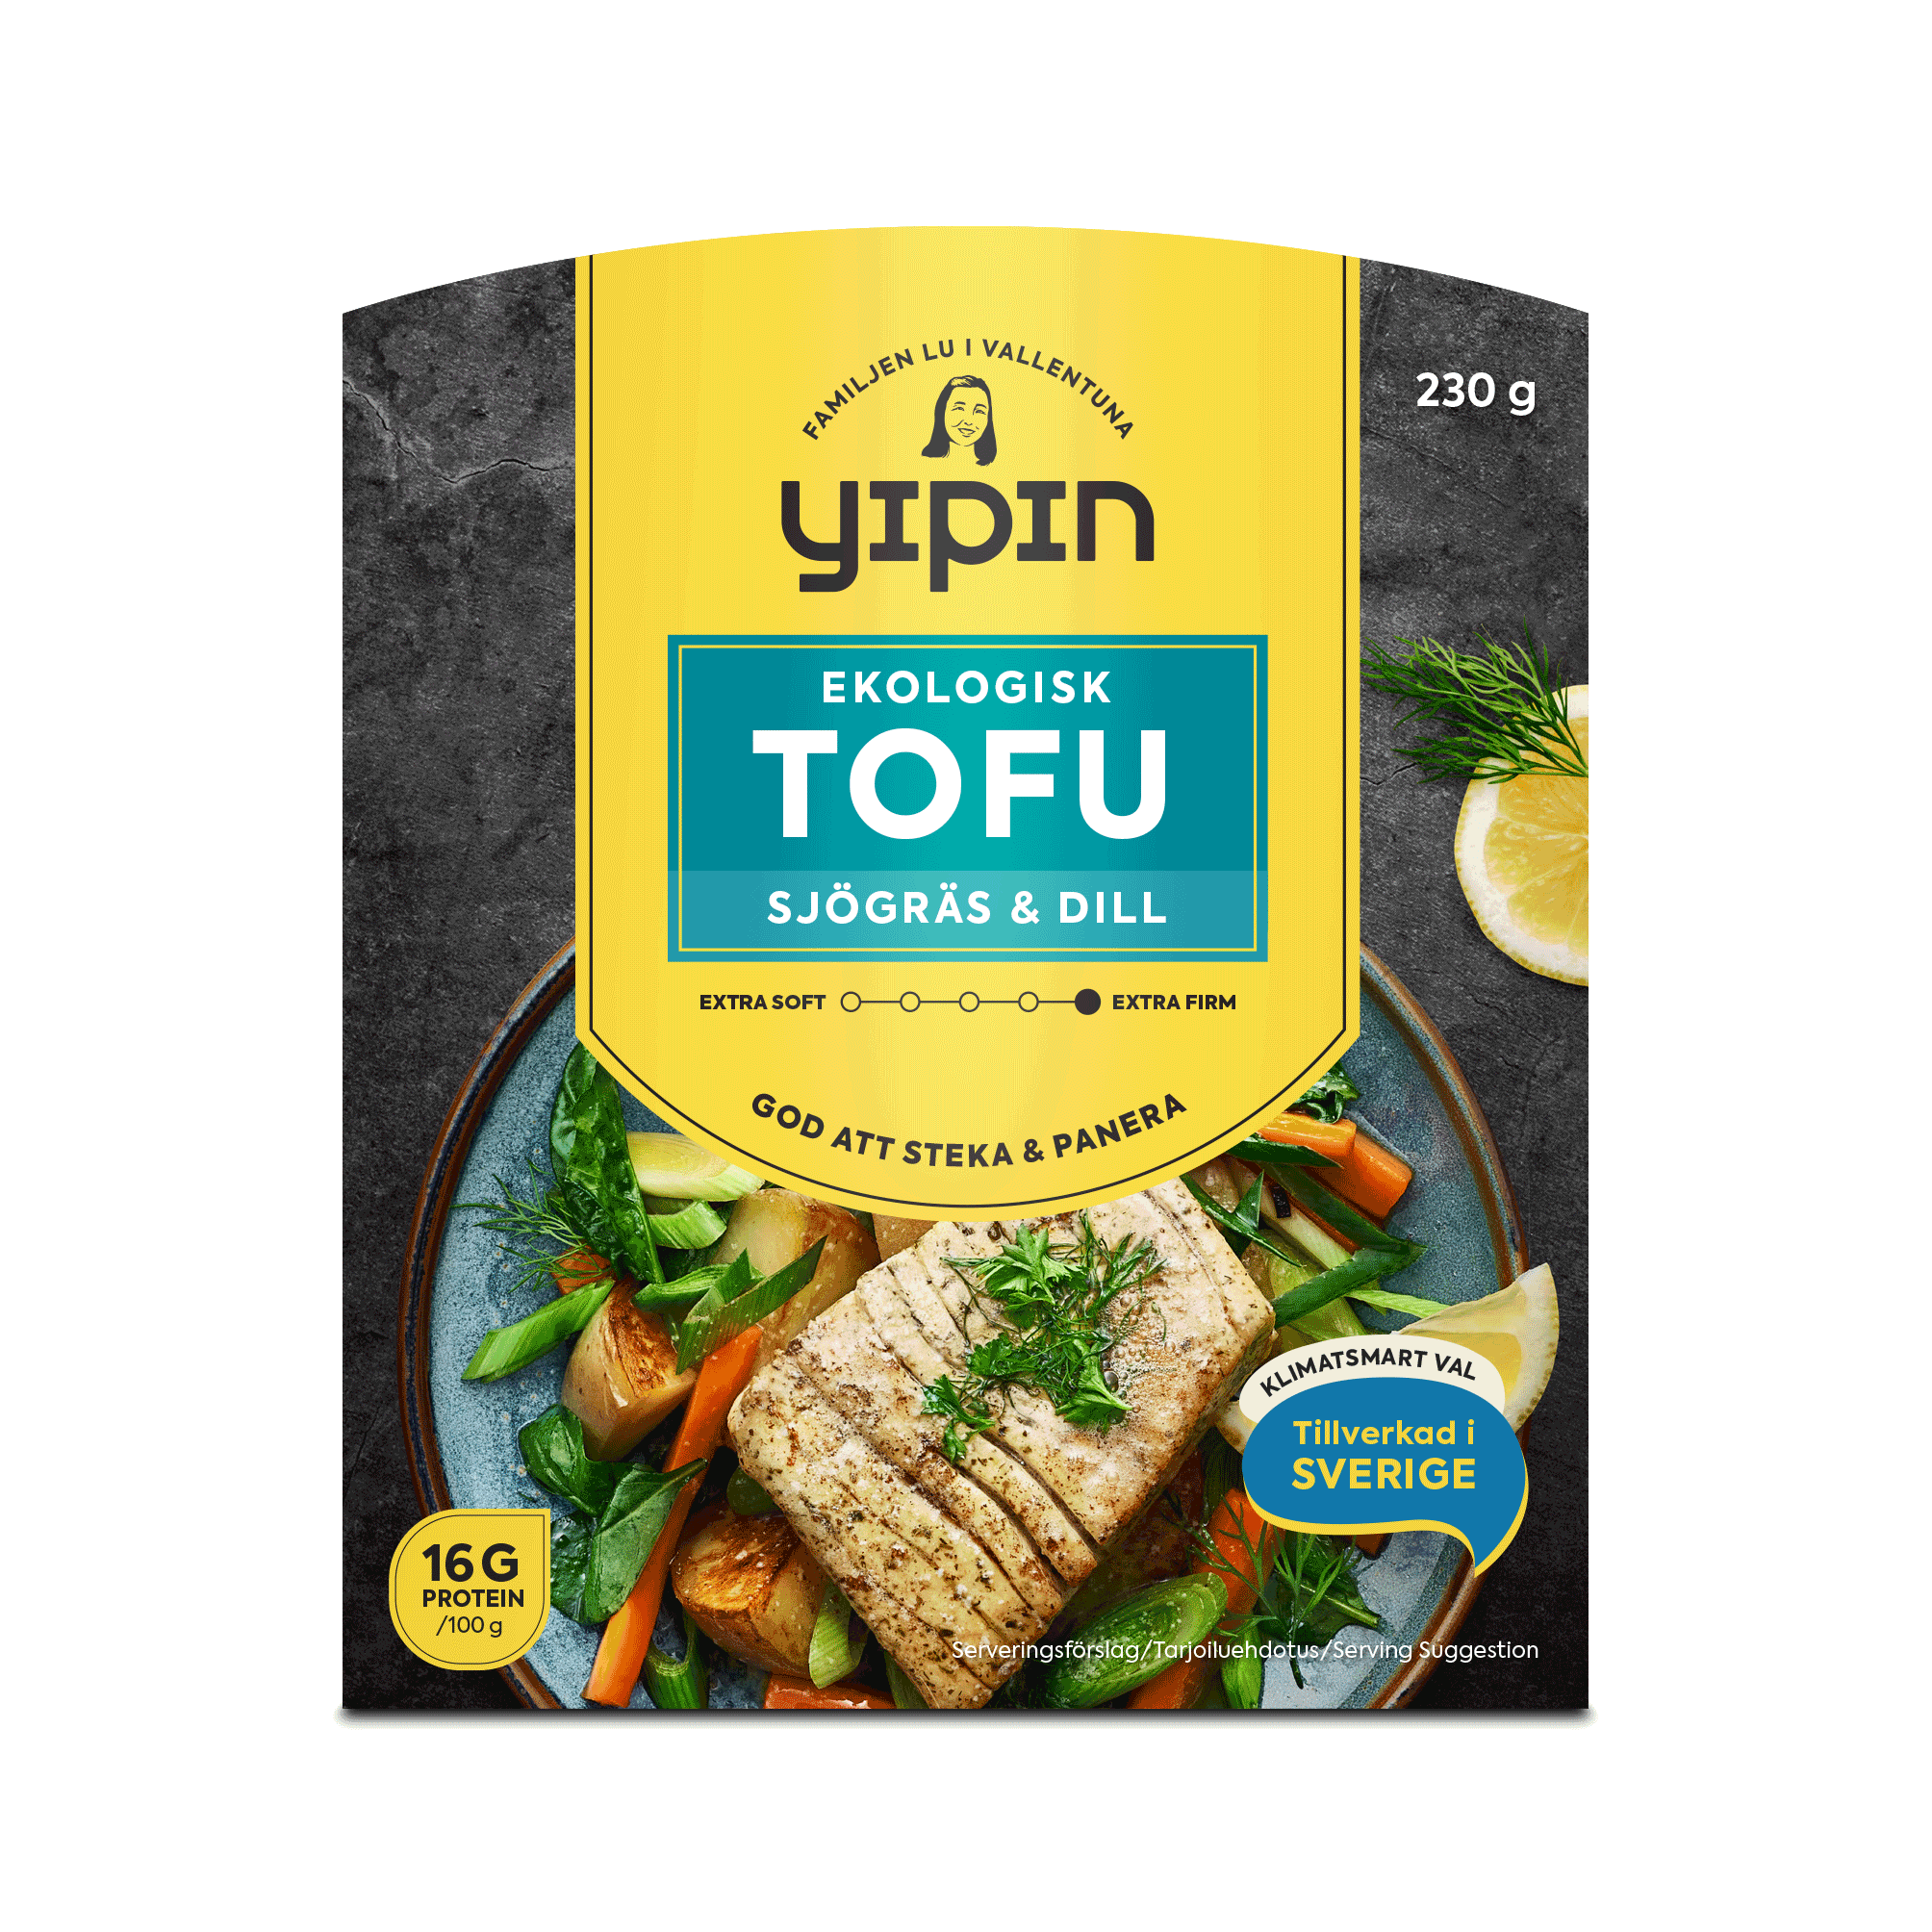 Yipin's Tofu seaweed & dill'